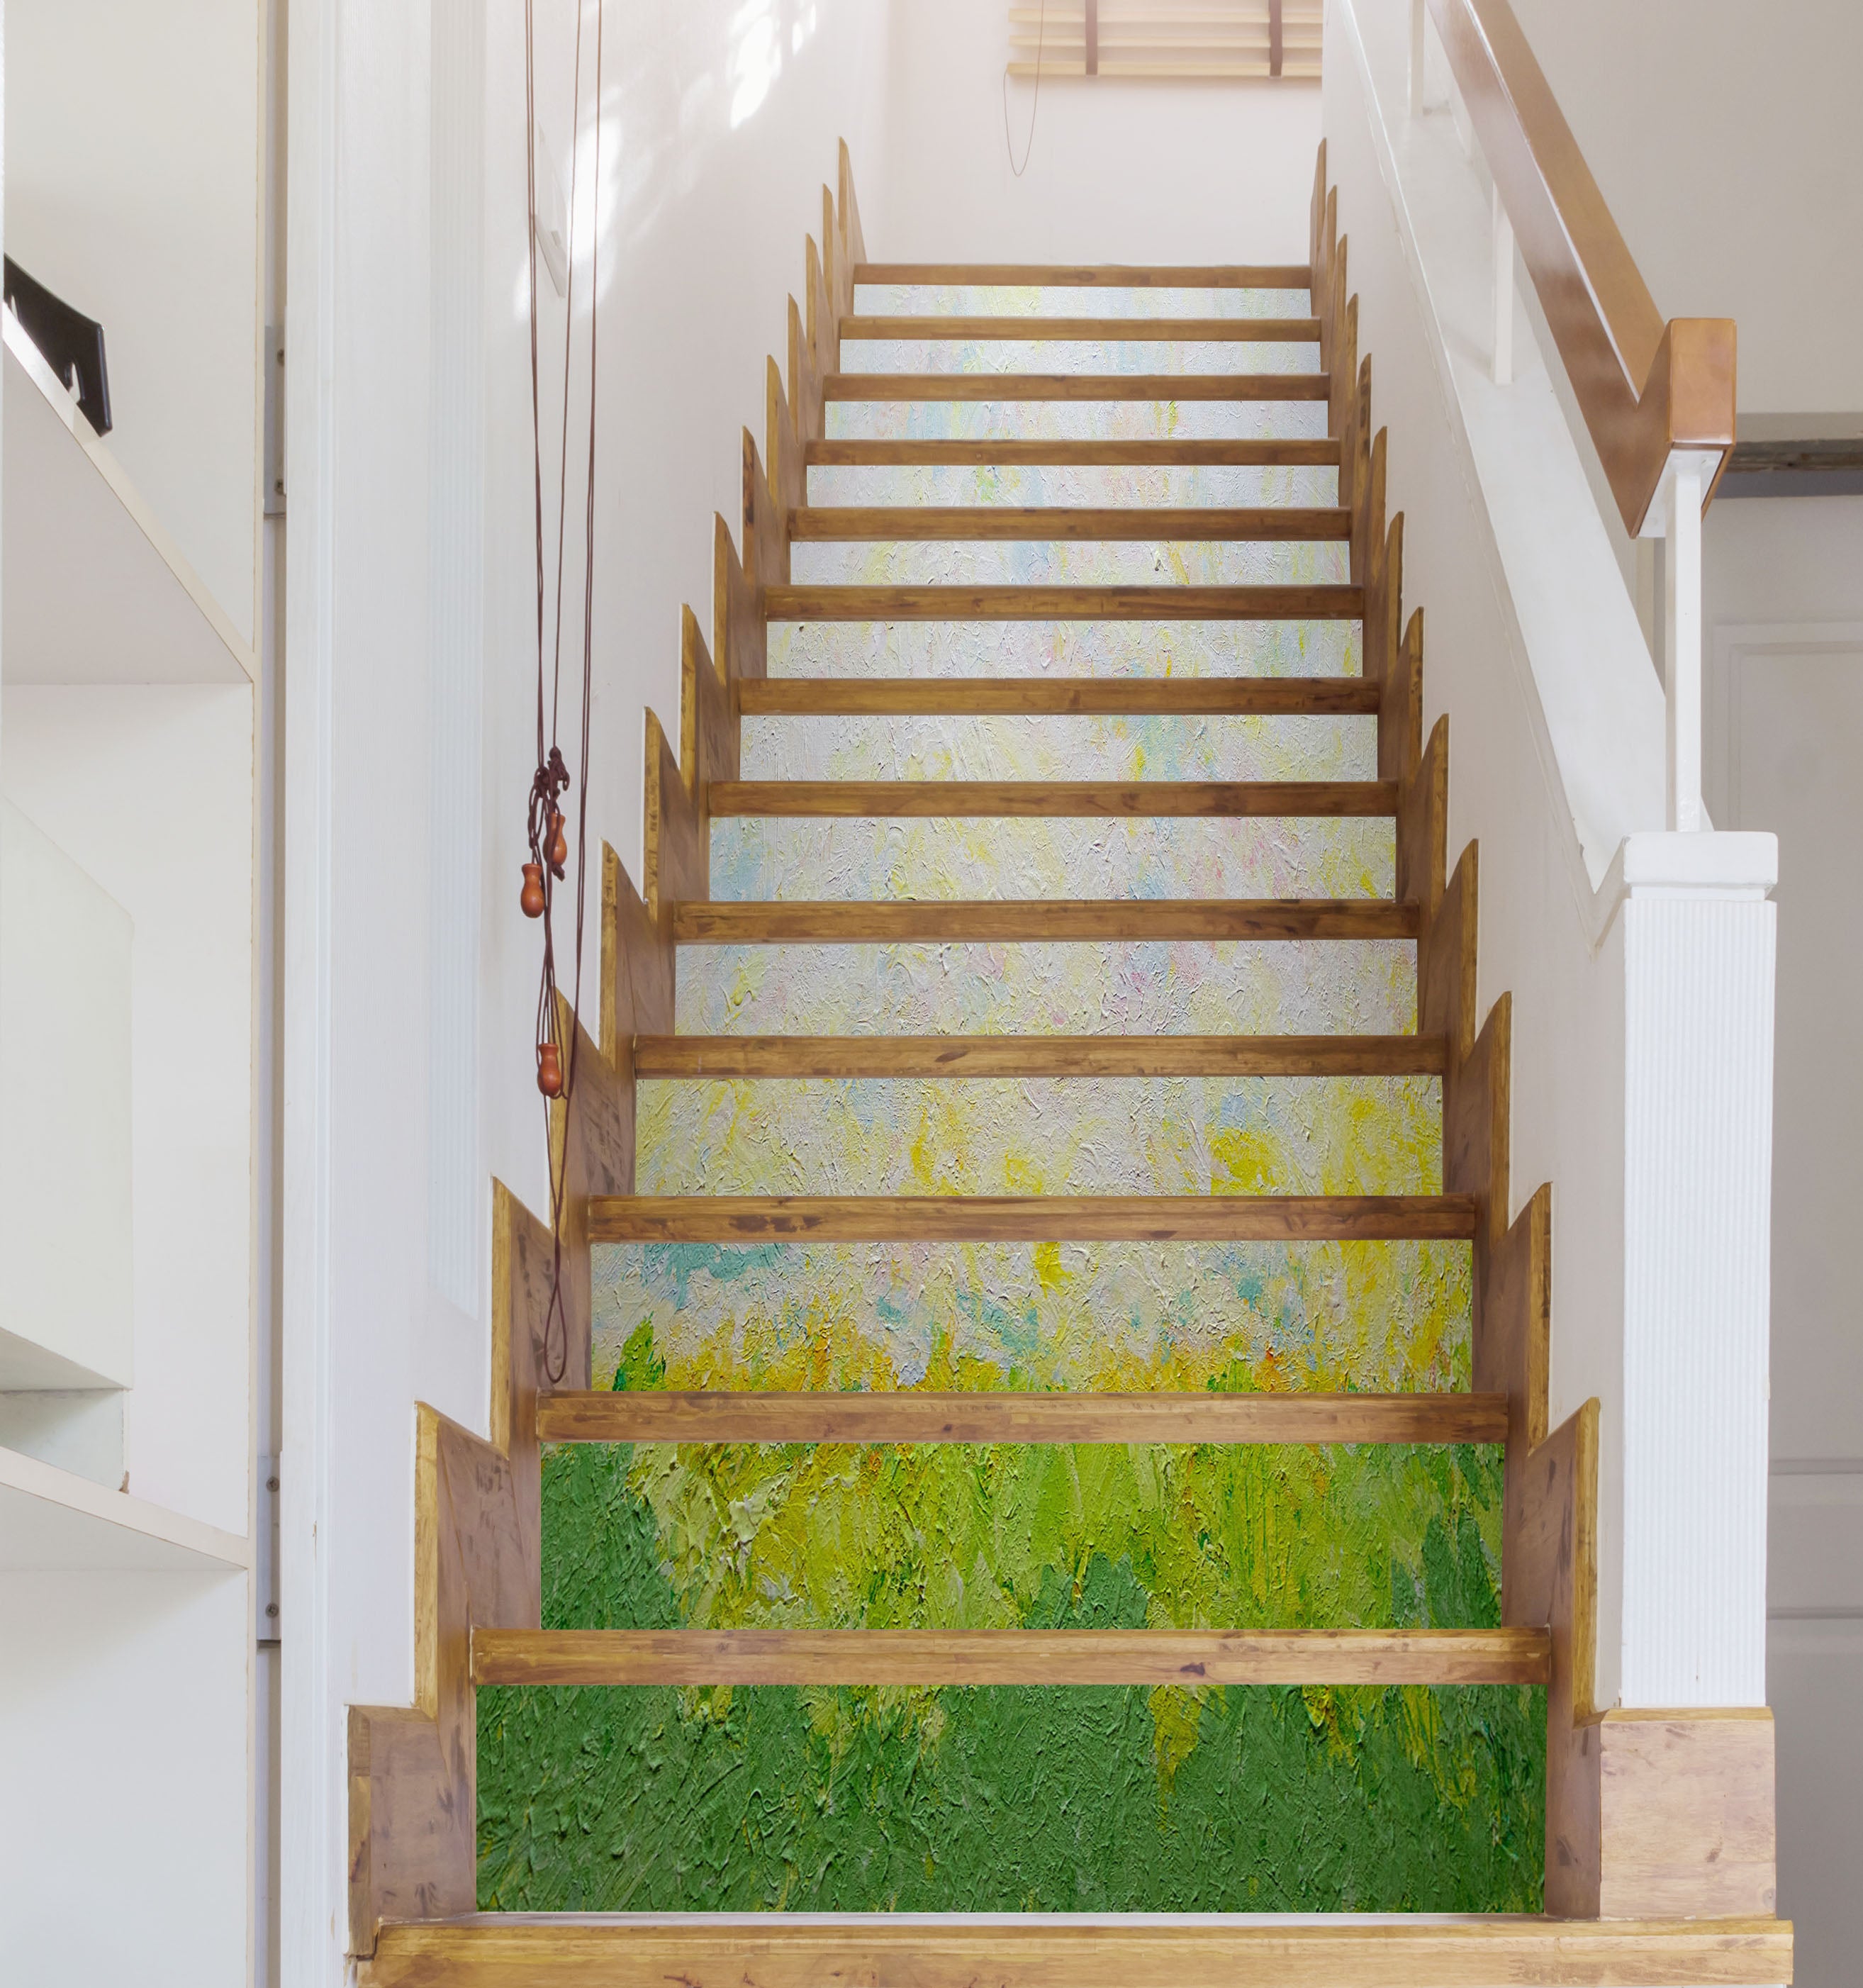 3D Green Grass 96132 Allan P. Friedlander Stair Risers